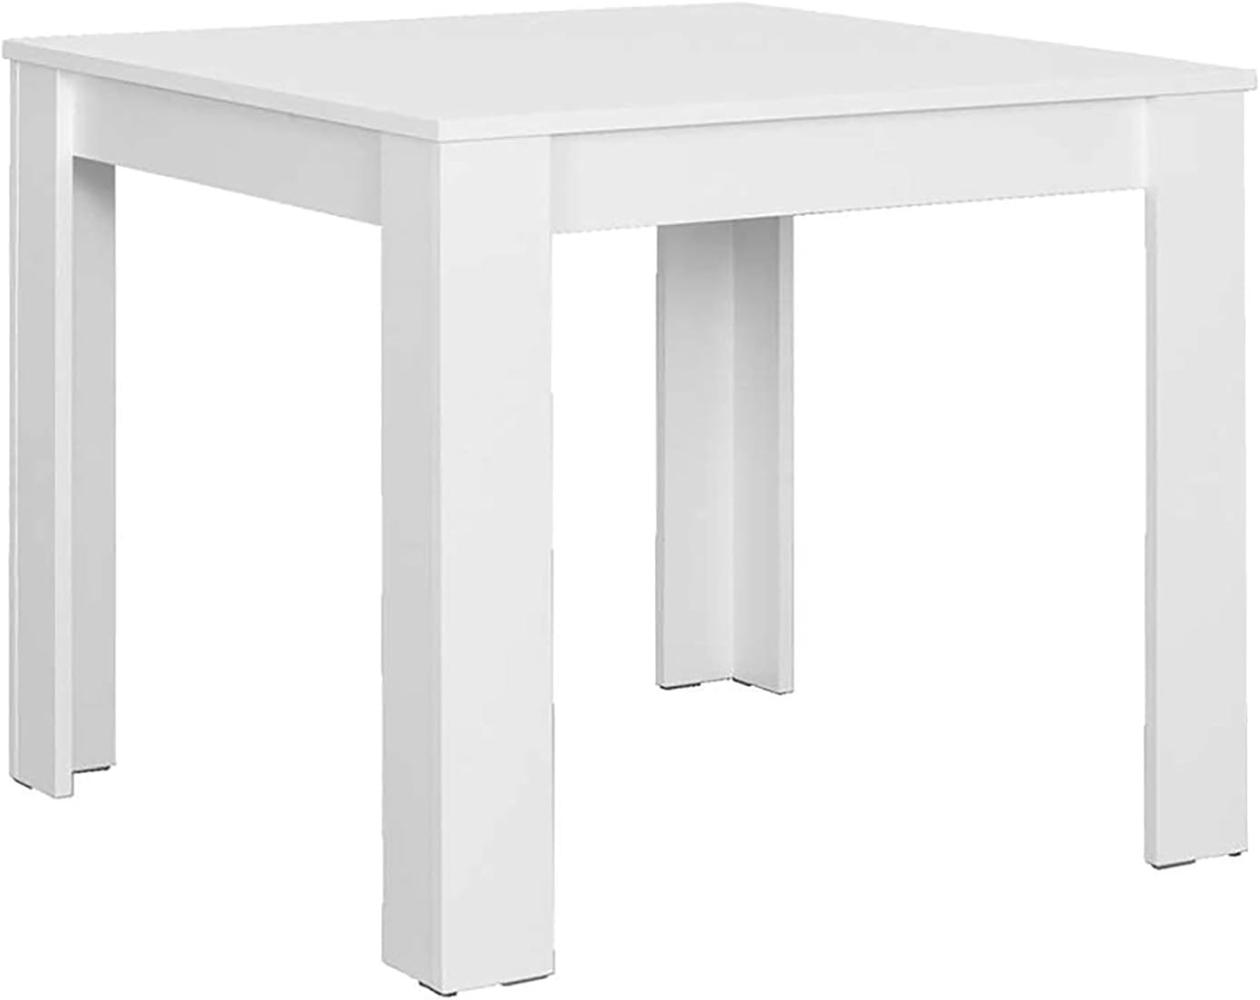 byLIVING Esstisch Nepal / Moderner Küchentisch in Weiß / Platzsparender Tisch / 90 x 90, H 75 cm Bild 1